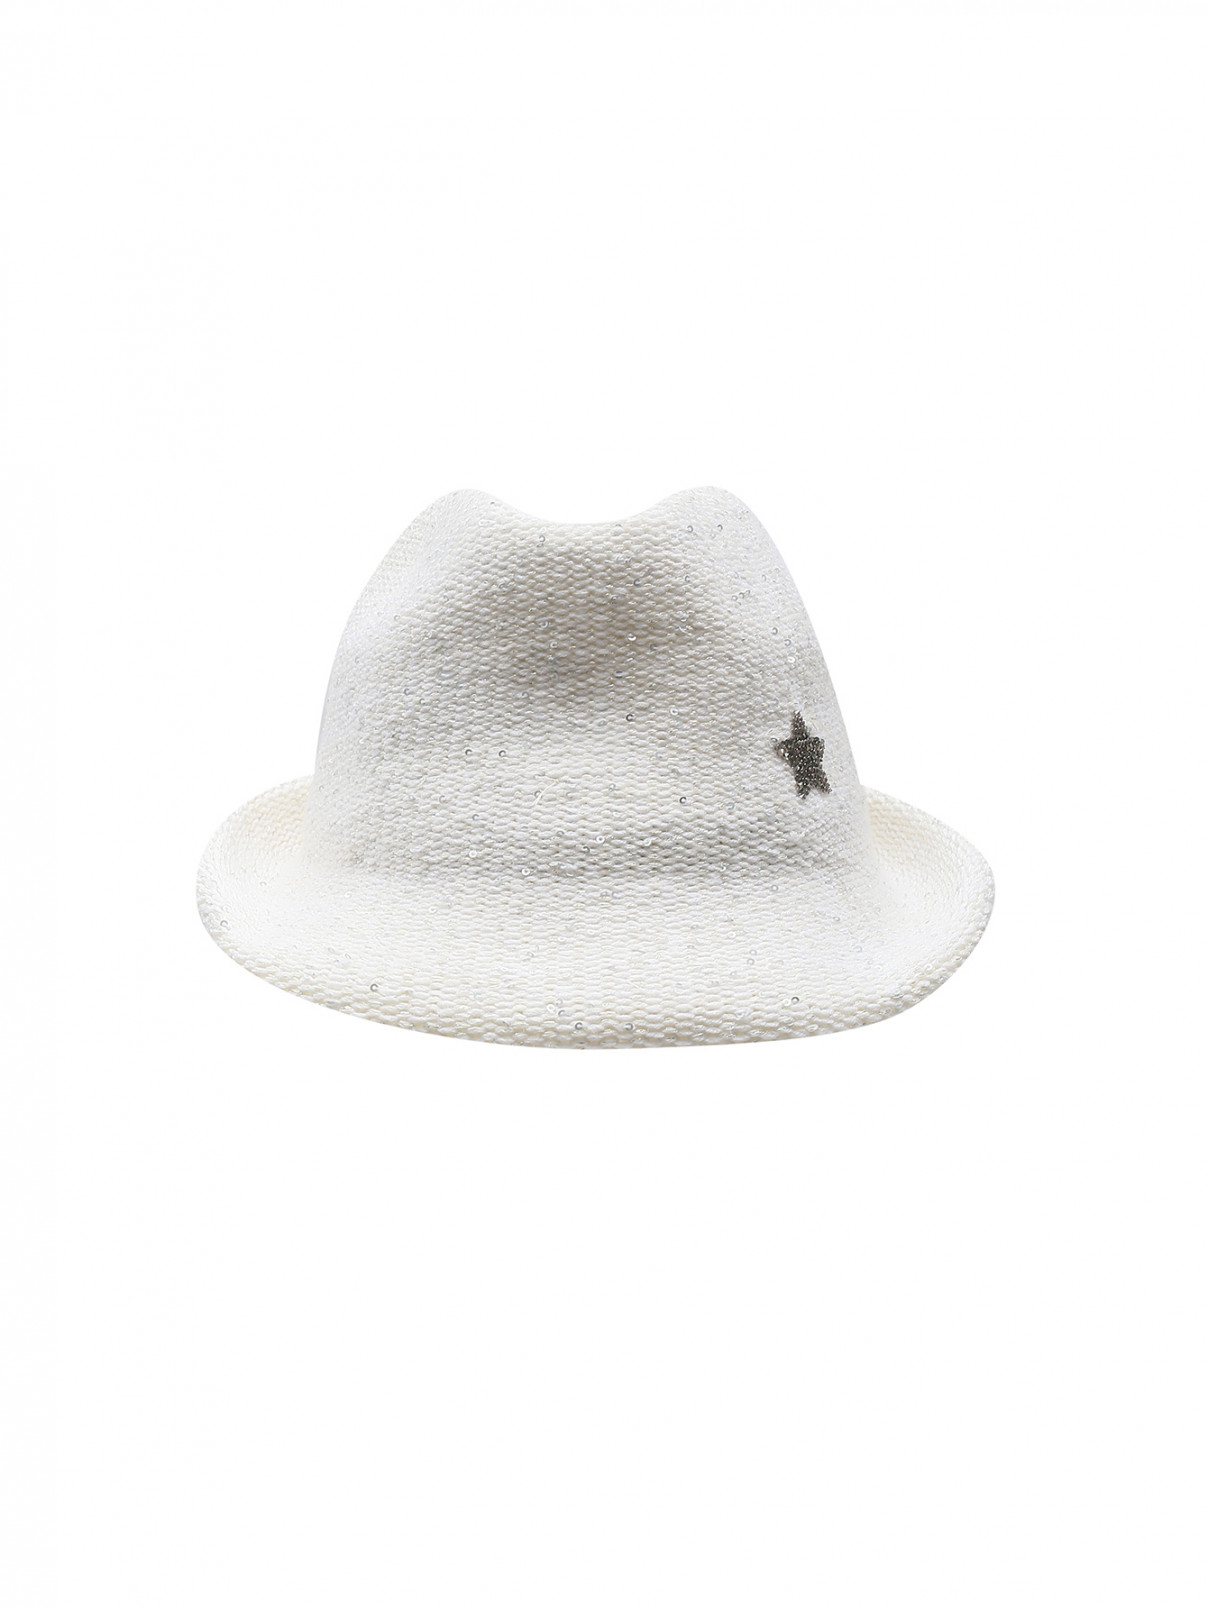 Трикотажная шляпа из смешанной шерсти, декорированная пайетками Lorena Antoniazzi  –  Общий вид  – Цвет:  Белый